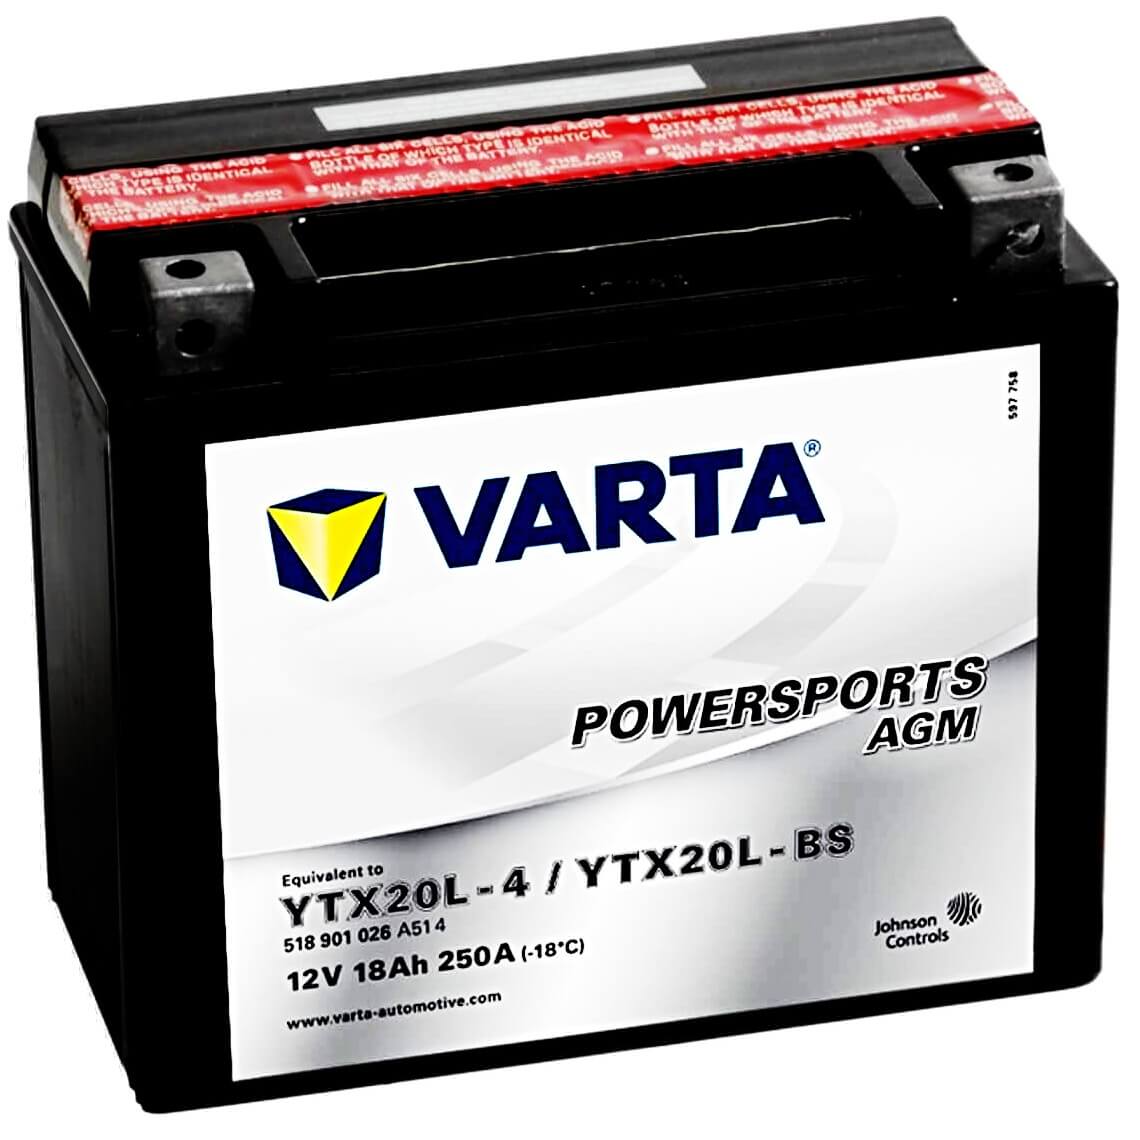 Varta Powersports 518901 AGM 12V 18Ah 250A